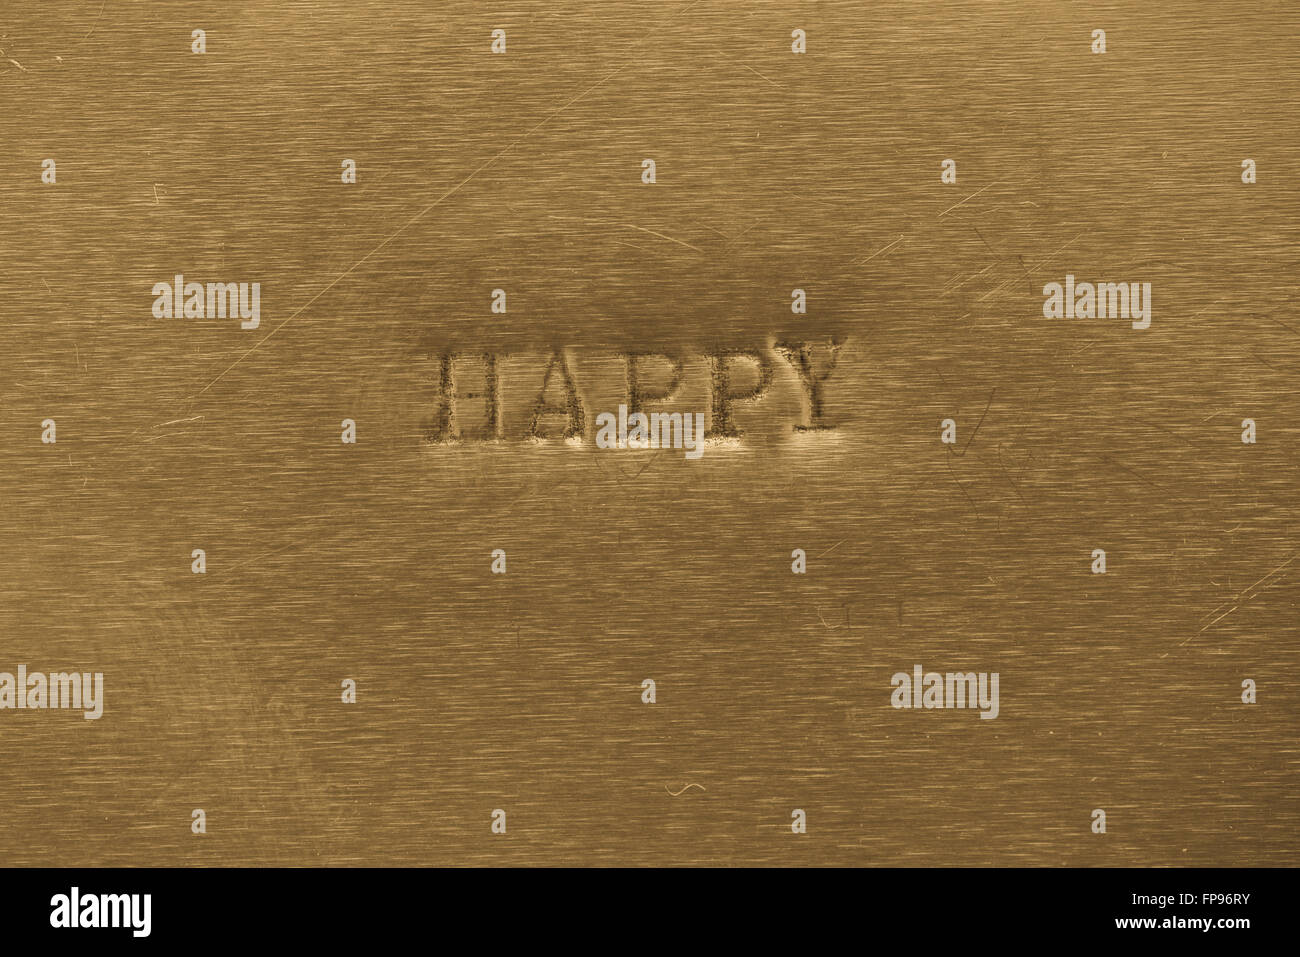 Wort glücklich auf Goldgrund metallic gedruckt Stockfoto